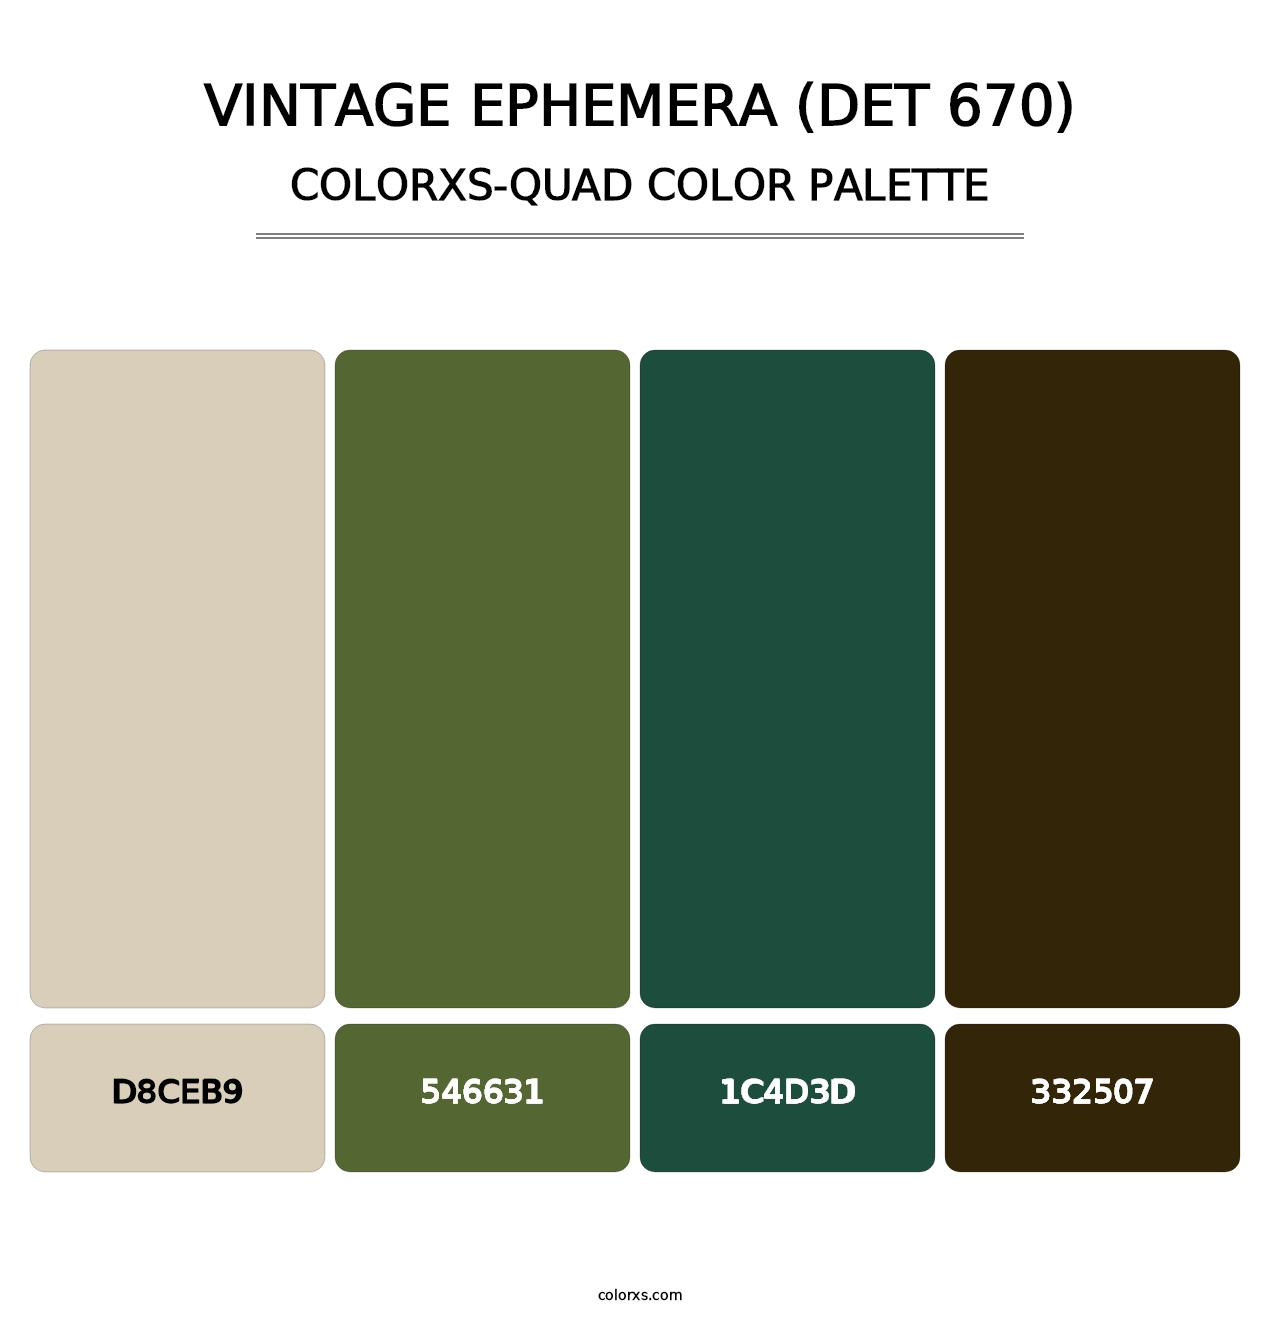 Vintage Ephemera (DET 670) - Colorxs Quad Palette